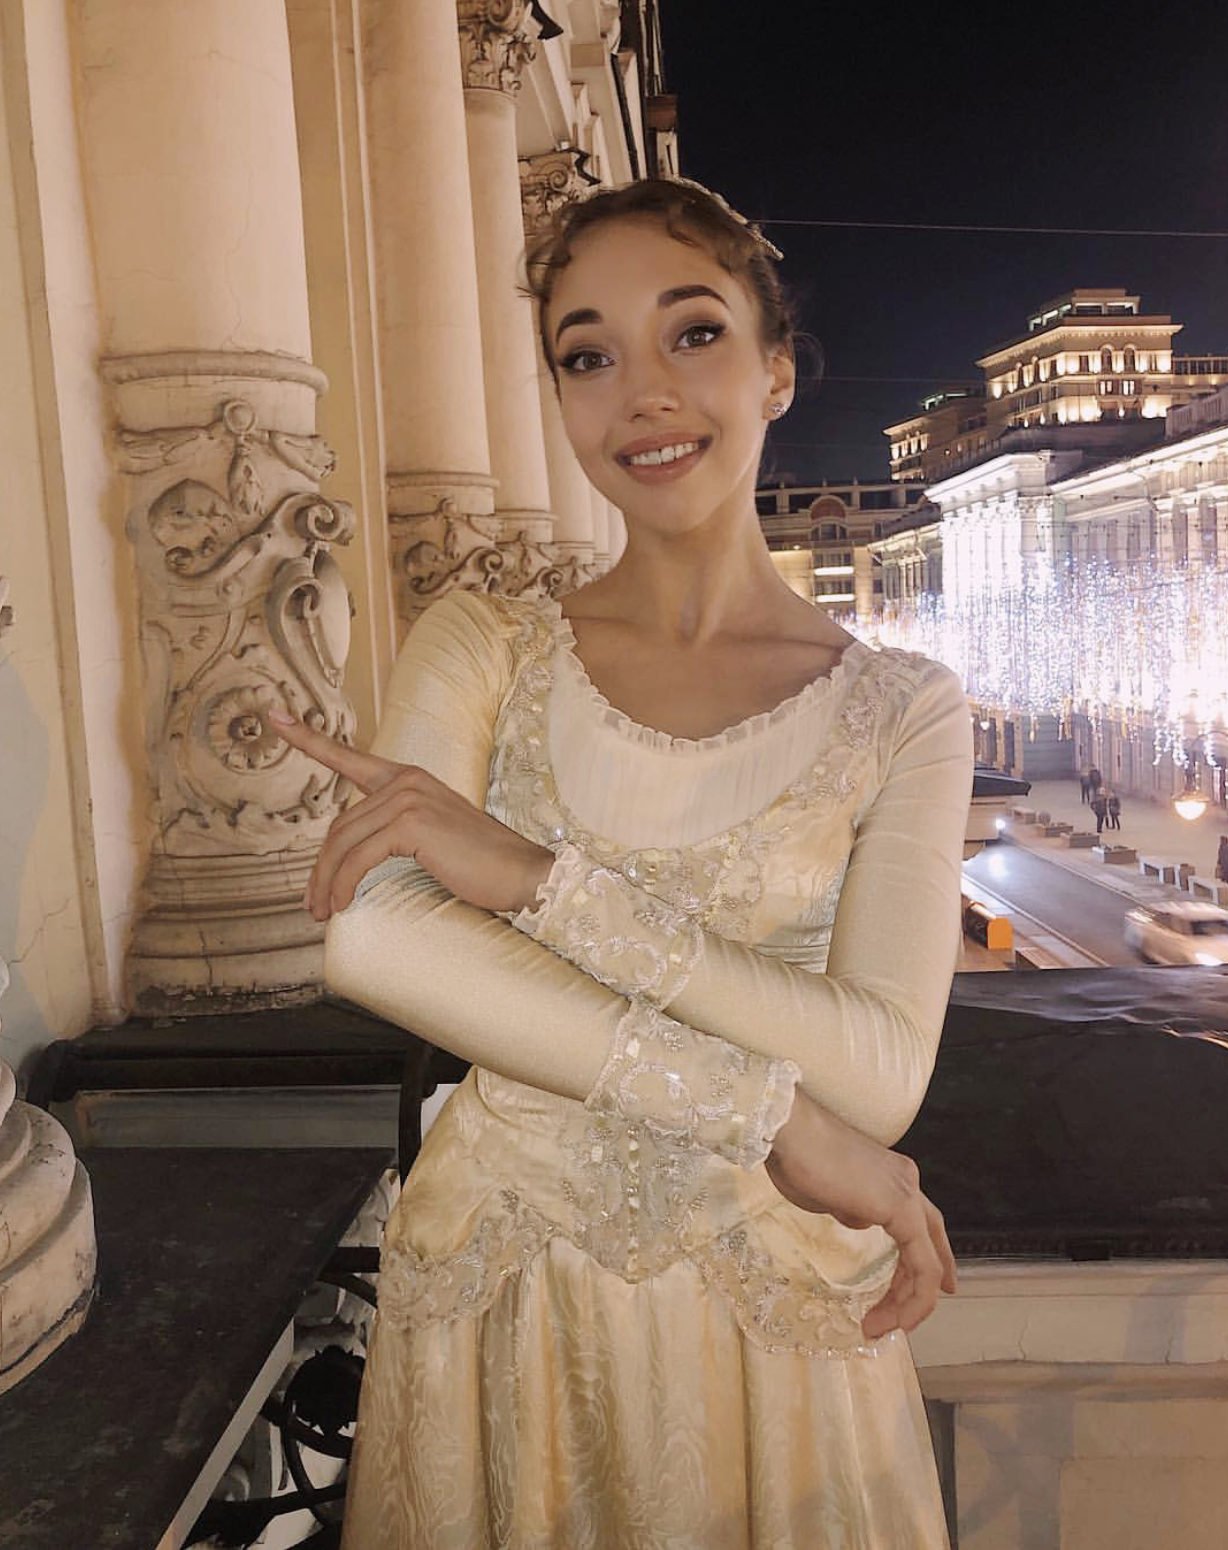 Мария Шувалова балерина большой театр